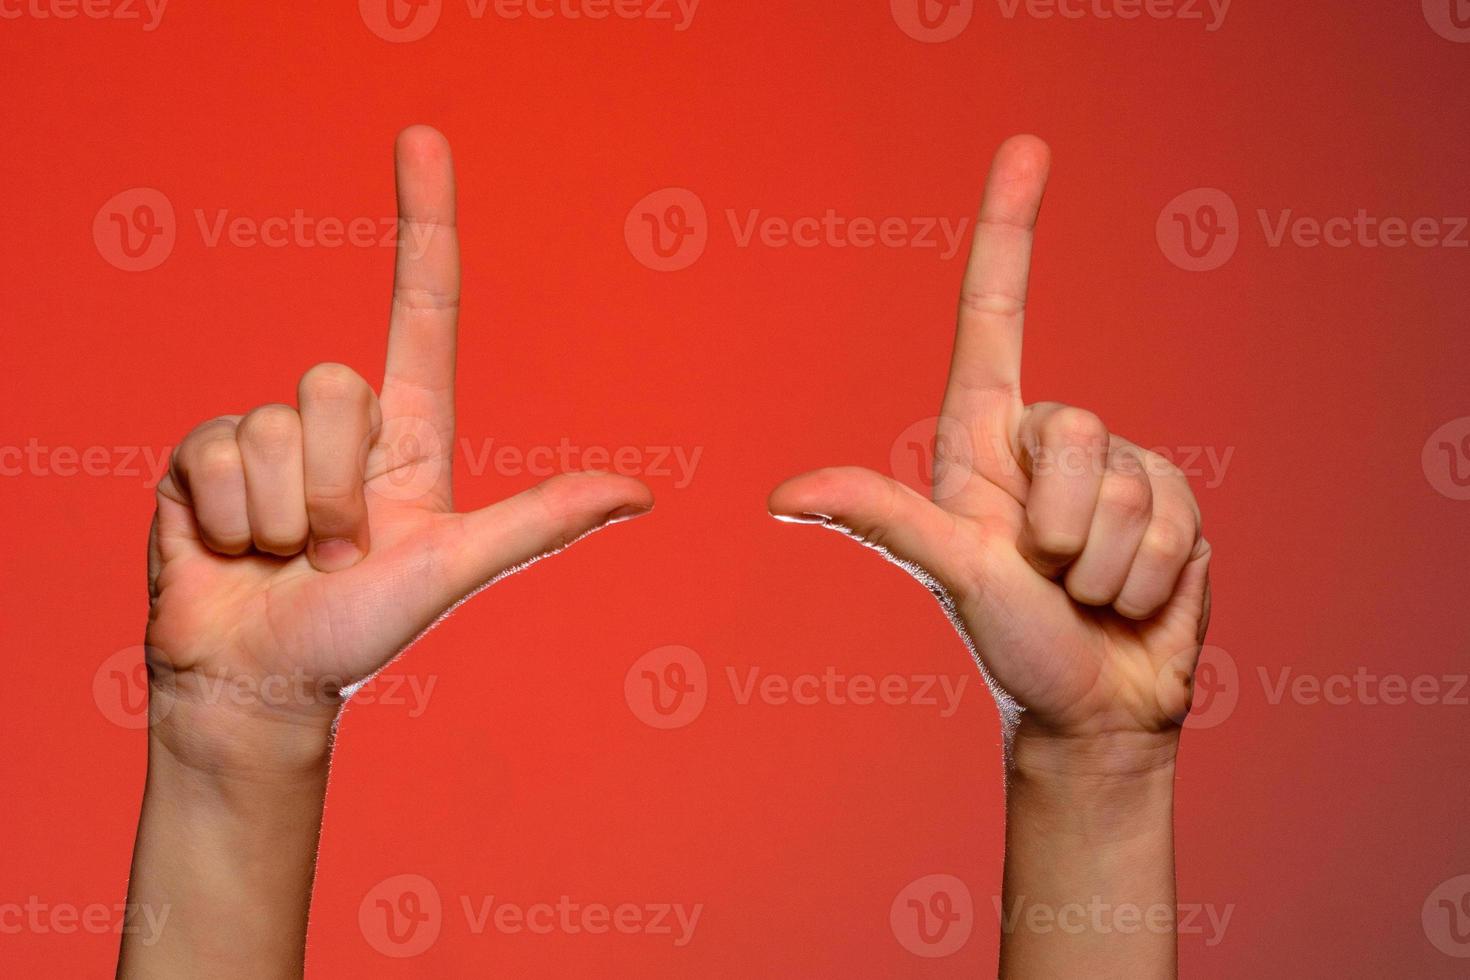 mão humana com dedos dobrados, mostra um dedo indicador que simboliza uma pistola, isolada em um fundo vermelho foto